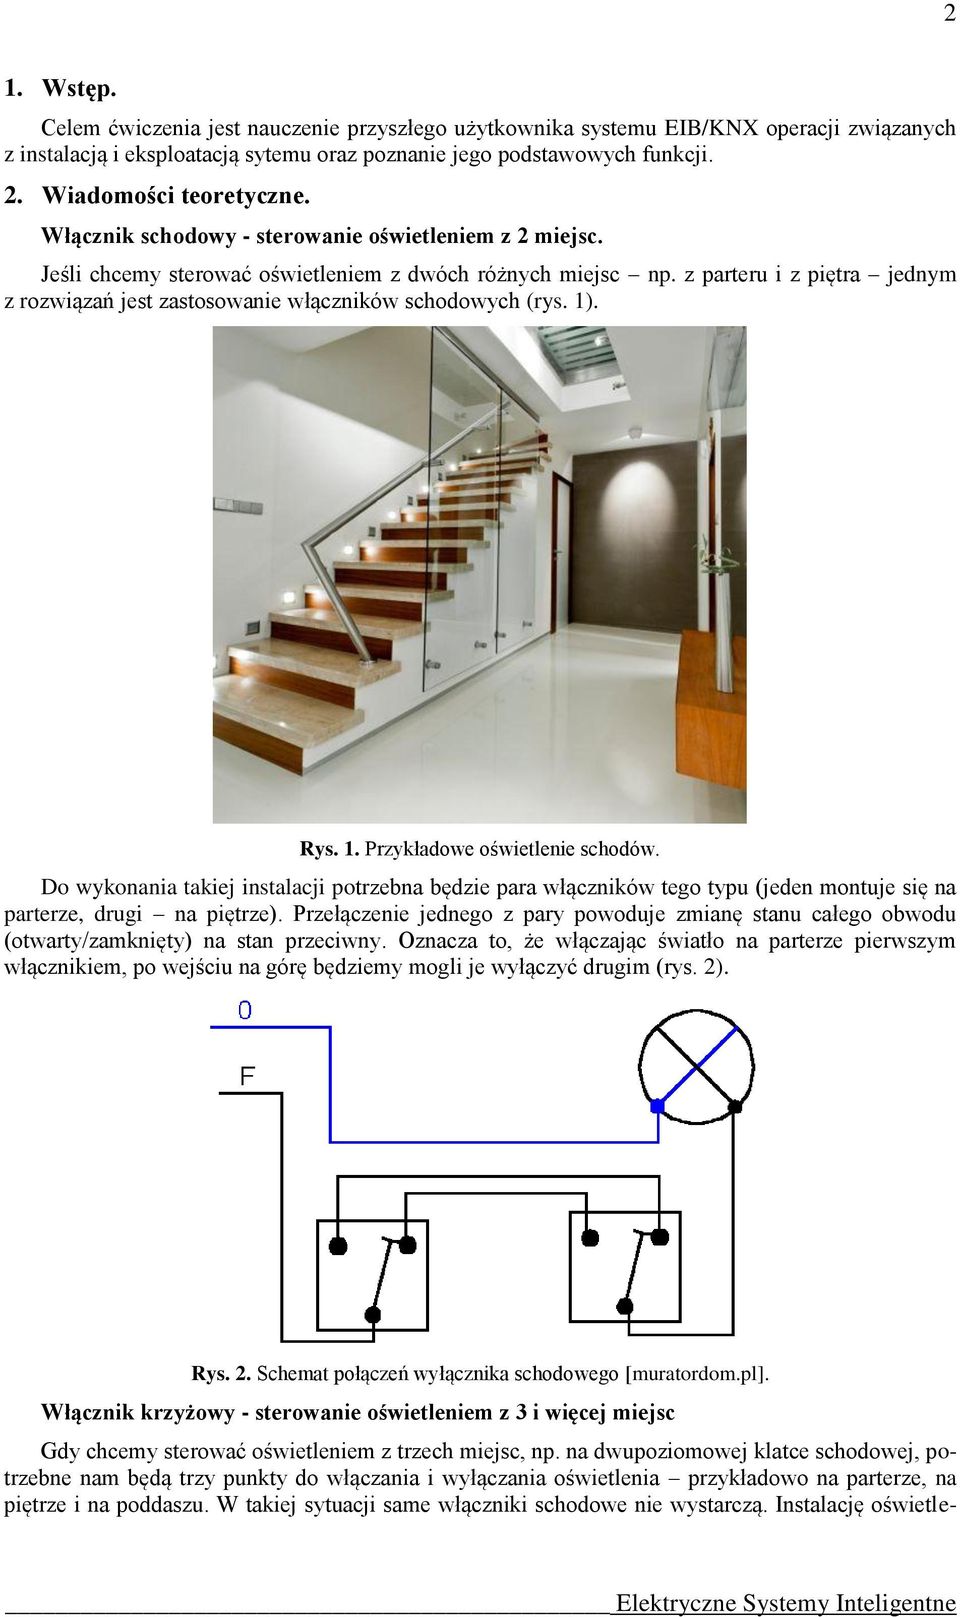 z parteru i z piętra jednym z rozwiązań jest zastosowanie włączników schodowych (rys. 1). Rys. 1. Przykładowe oświetlenie schodów.